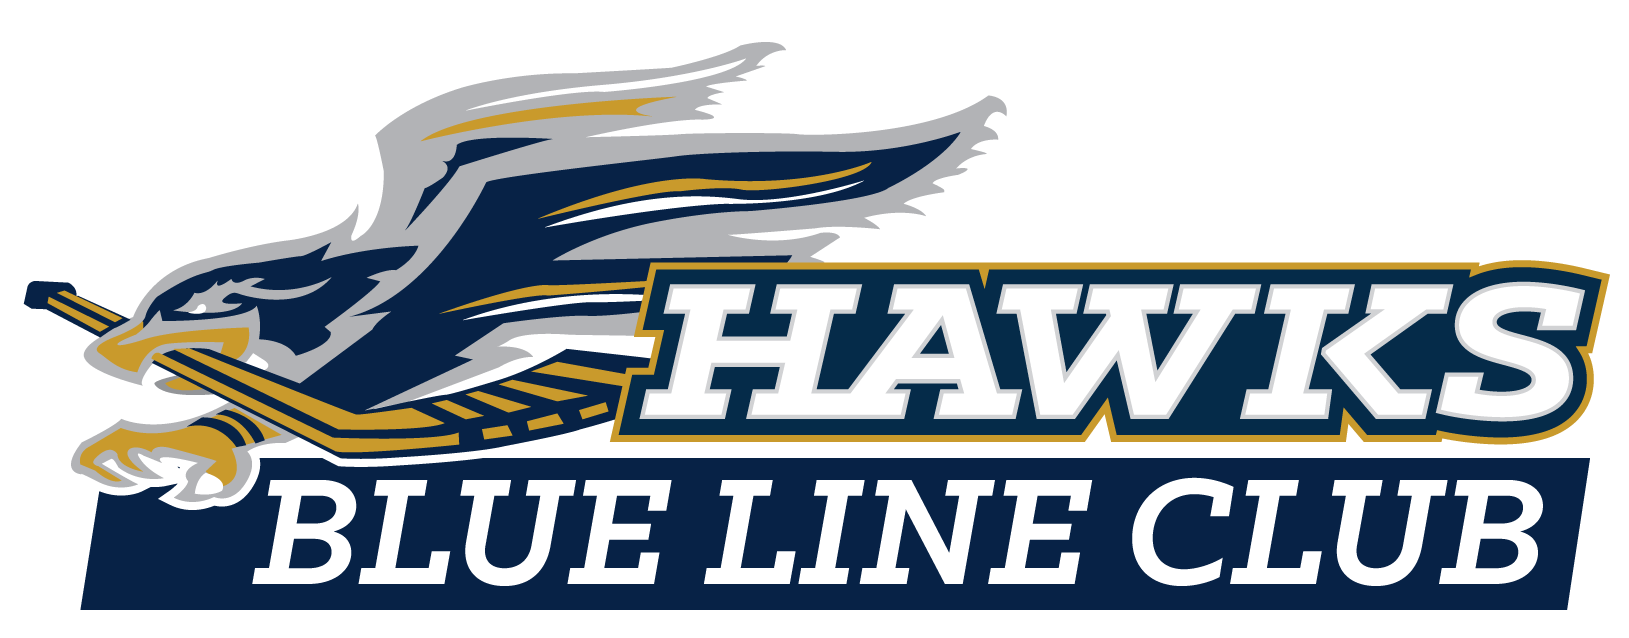 Hermantown Hawks Blue Line Club